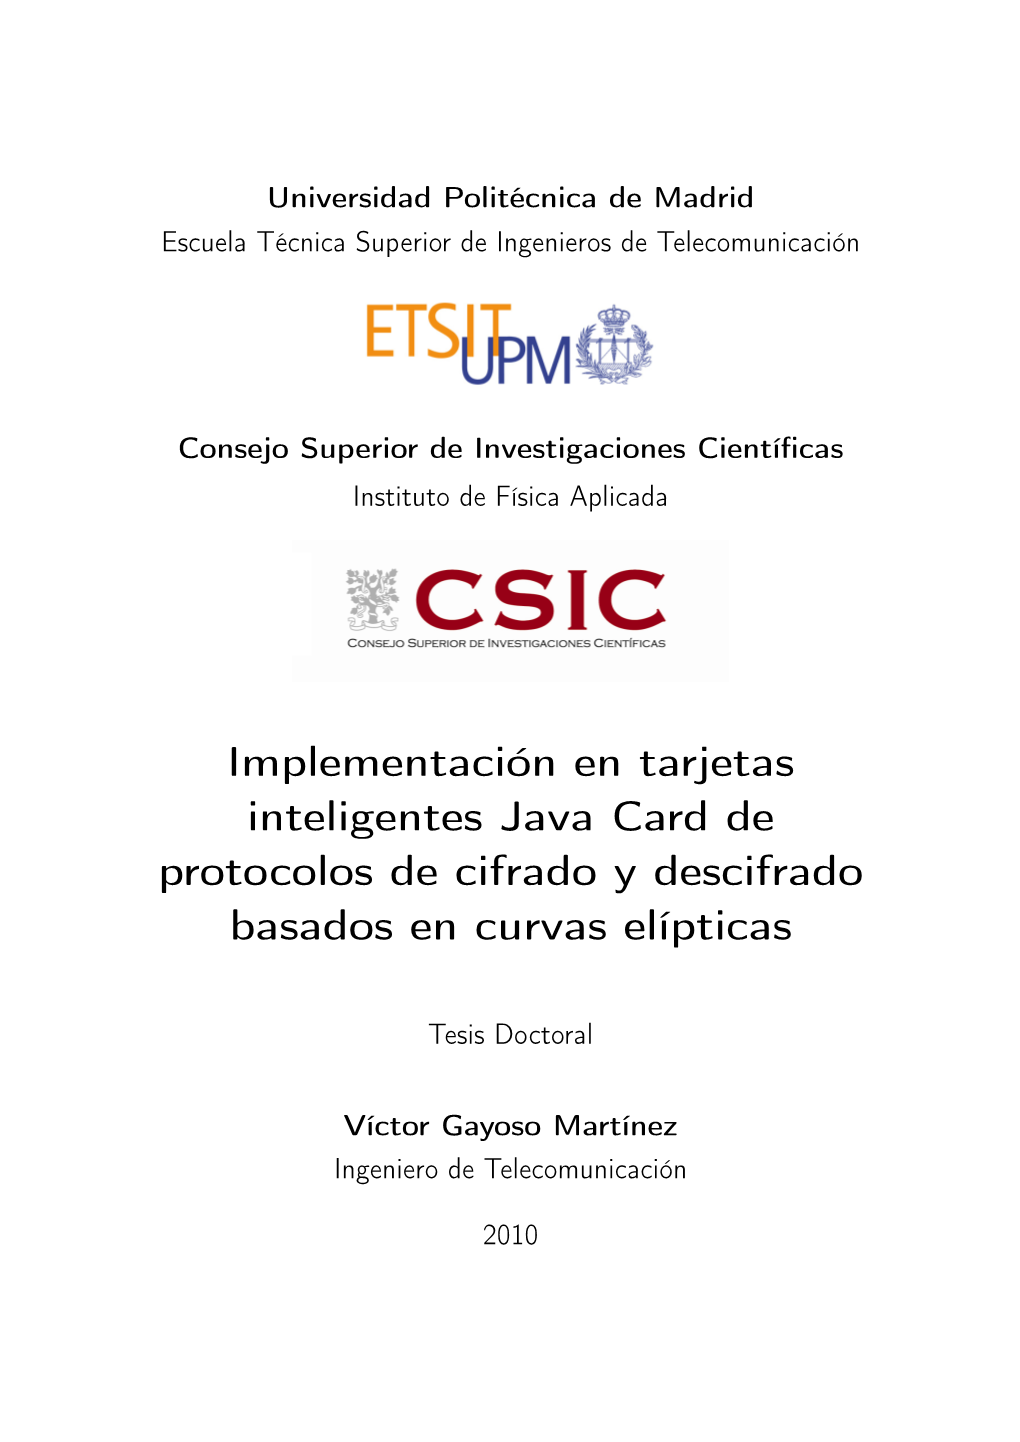 Implementación En Tarjetas Inteligentes Java Card De Protocolos De Cifrado Y Descifrado Basados En Curvas Elípticas